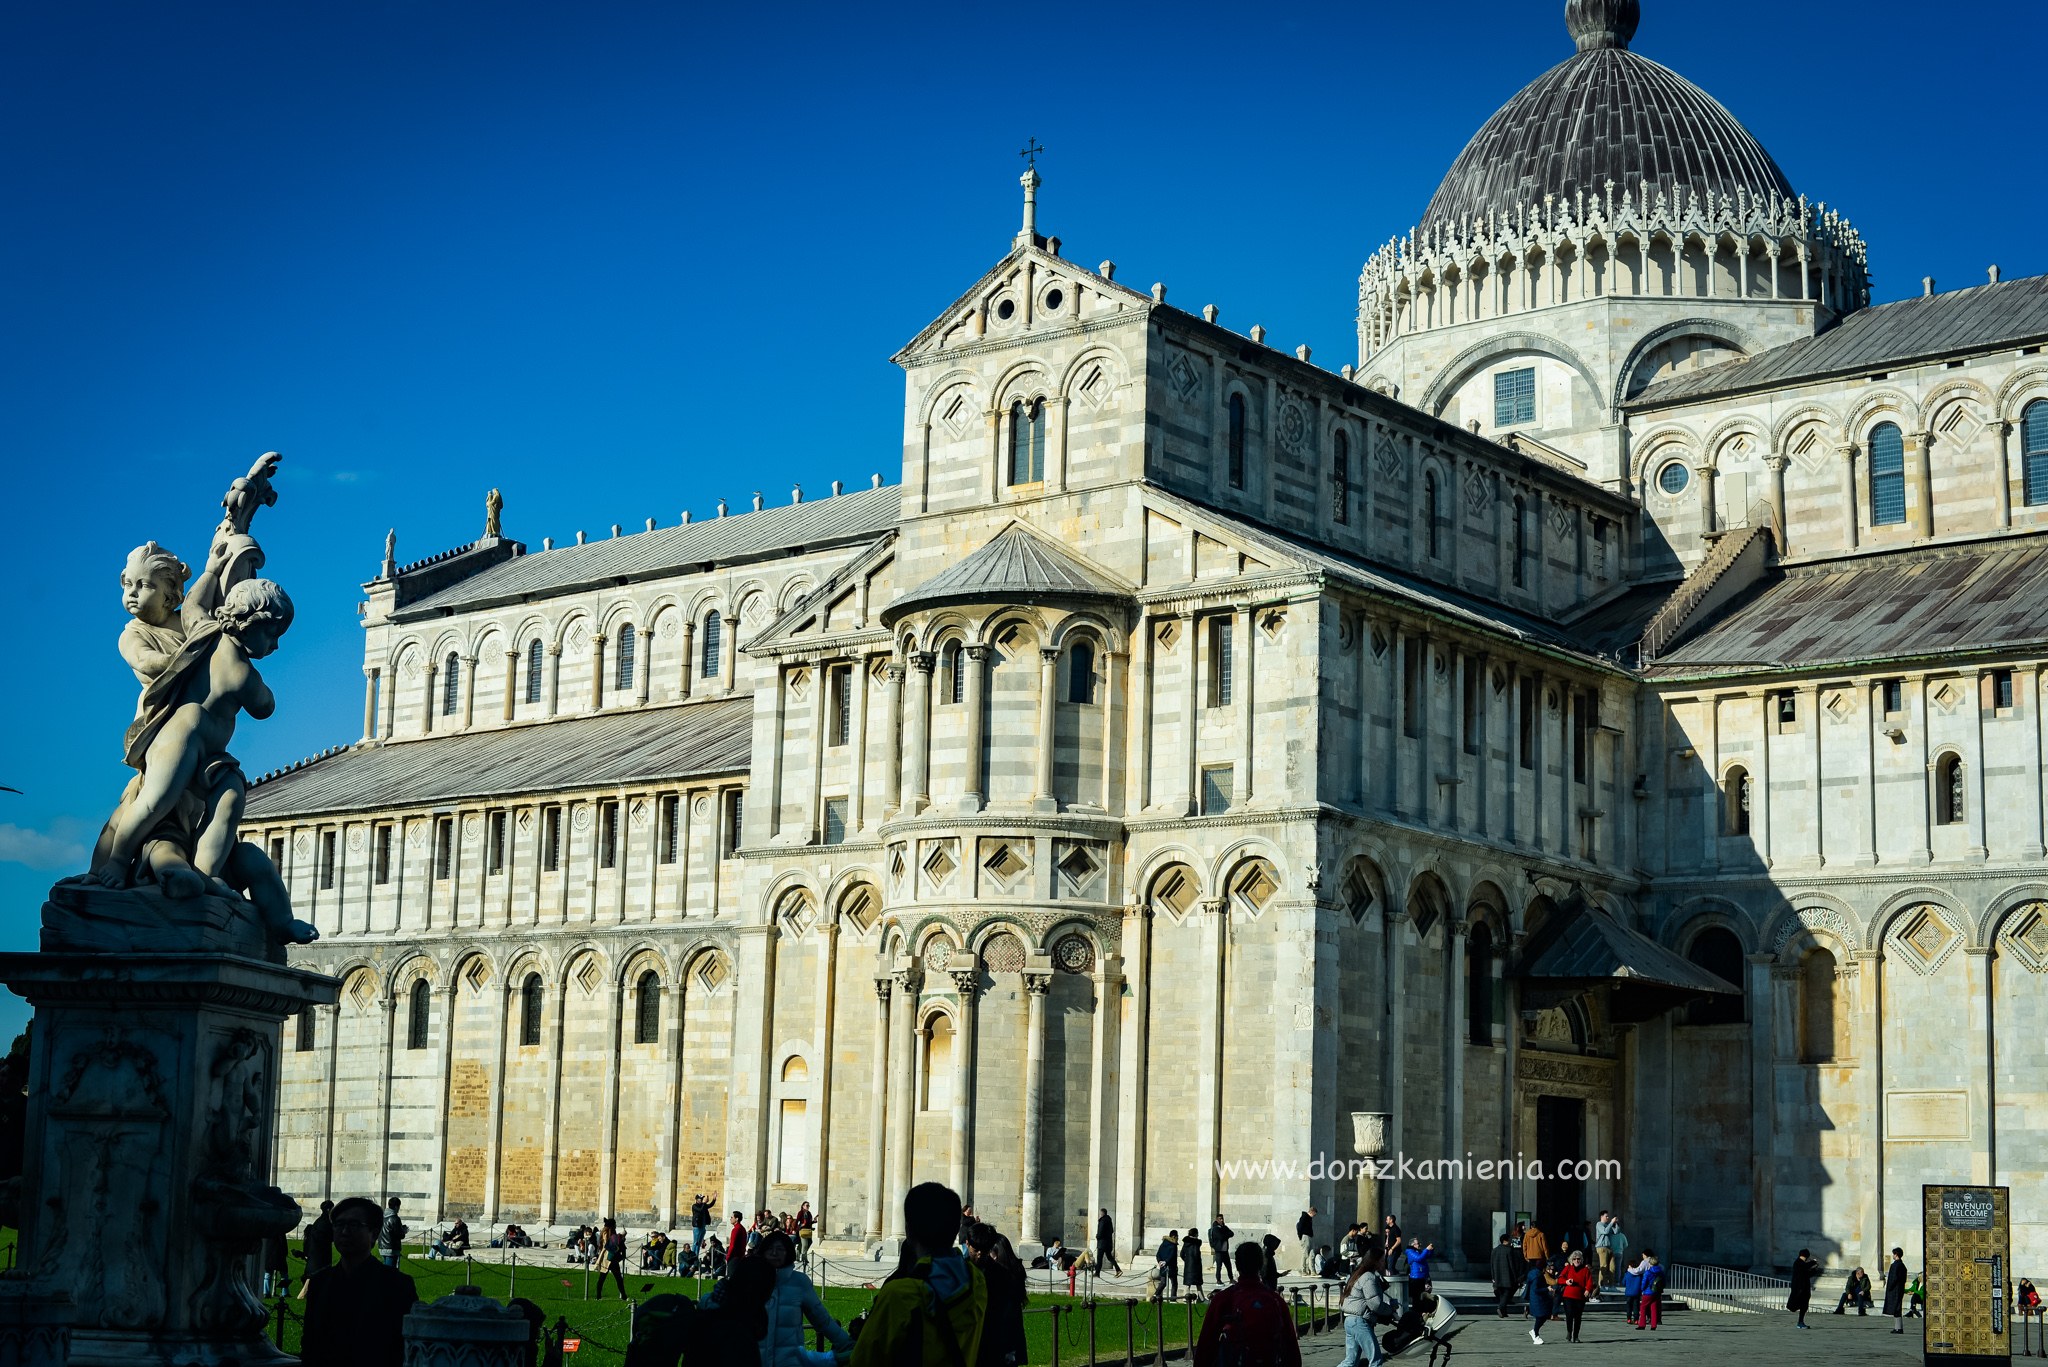 Camposanto i Duomo - co zobaczyć w Pizie